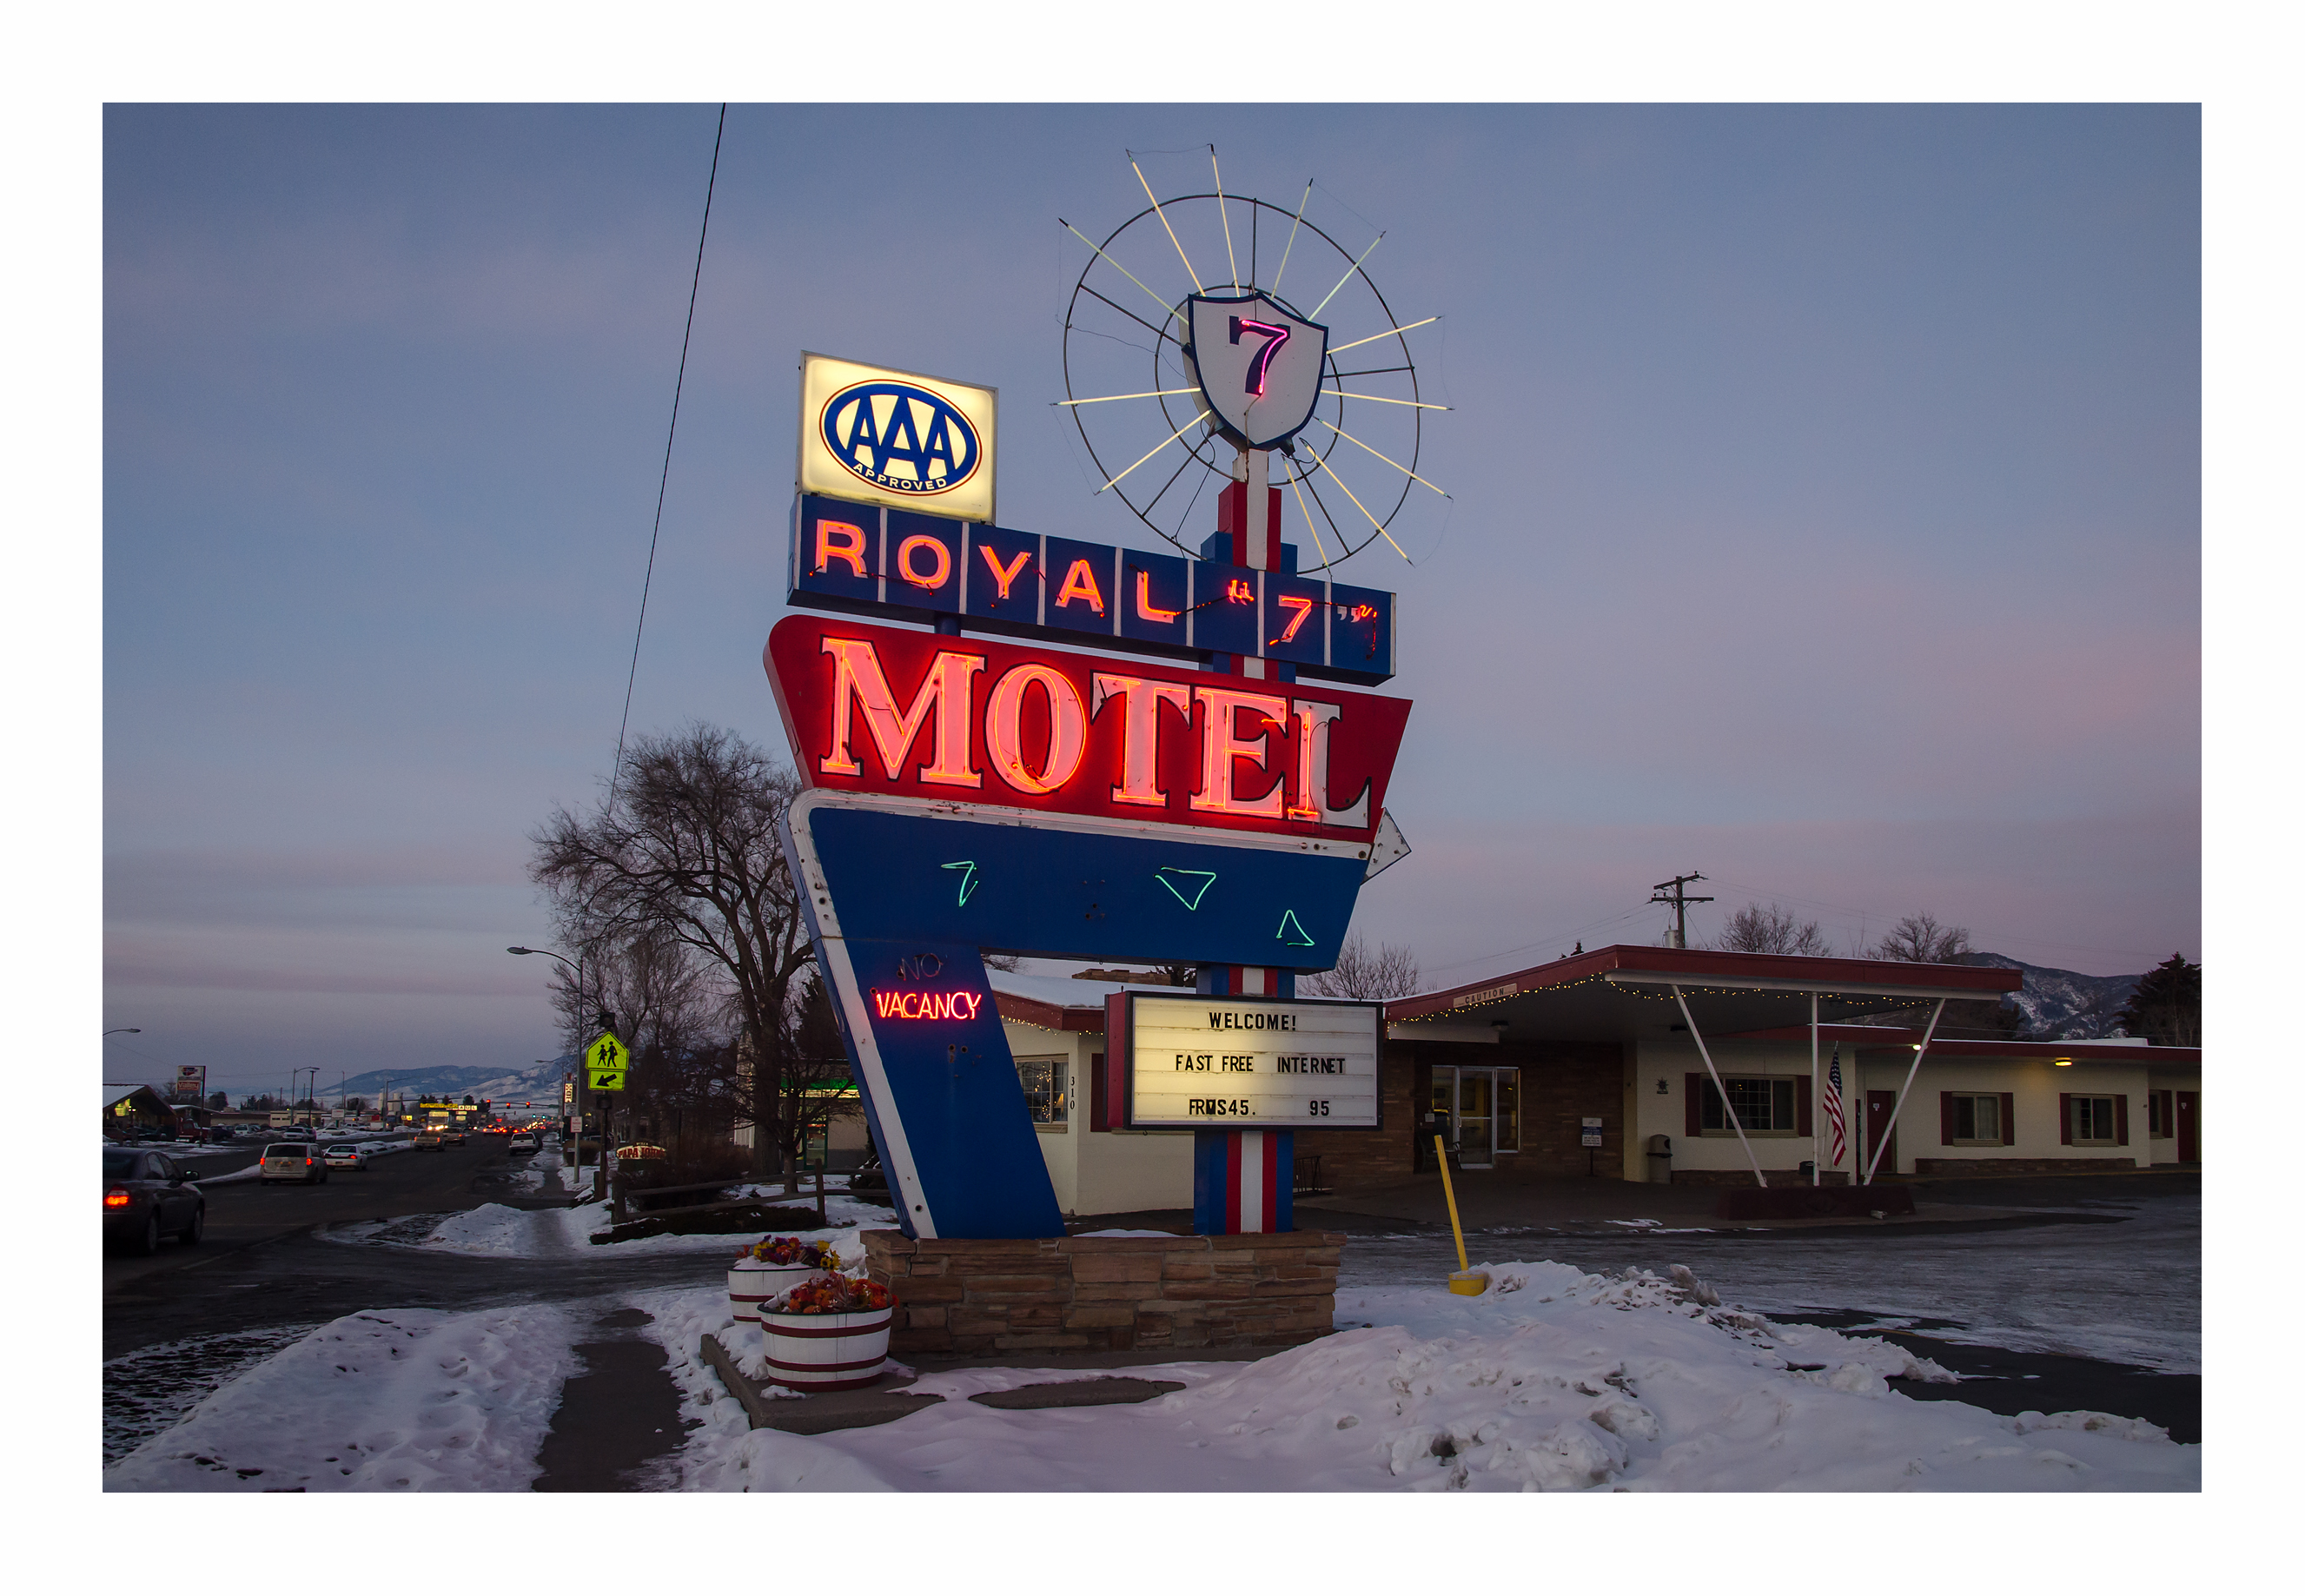 Royal 7 Motel - 310 North 7th Avenue, Bozeman, Montana U.S.A. - January 3, 2013